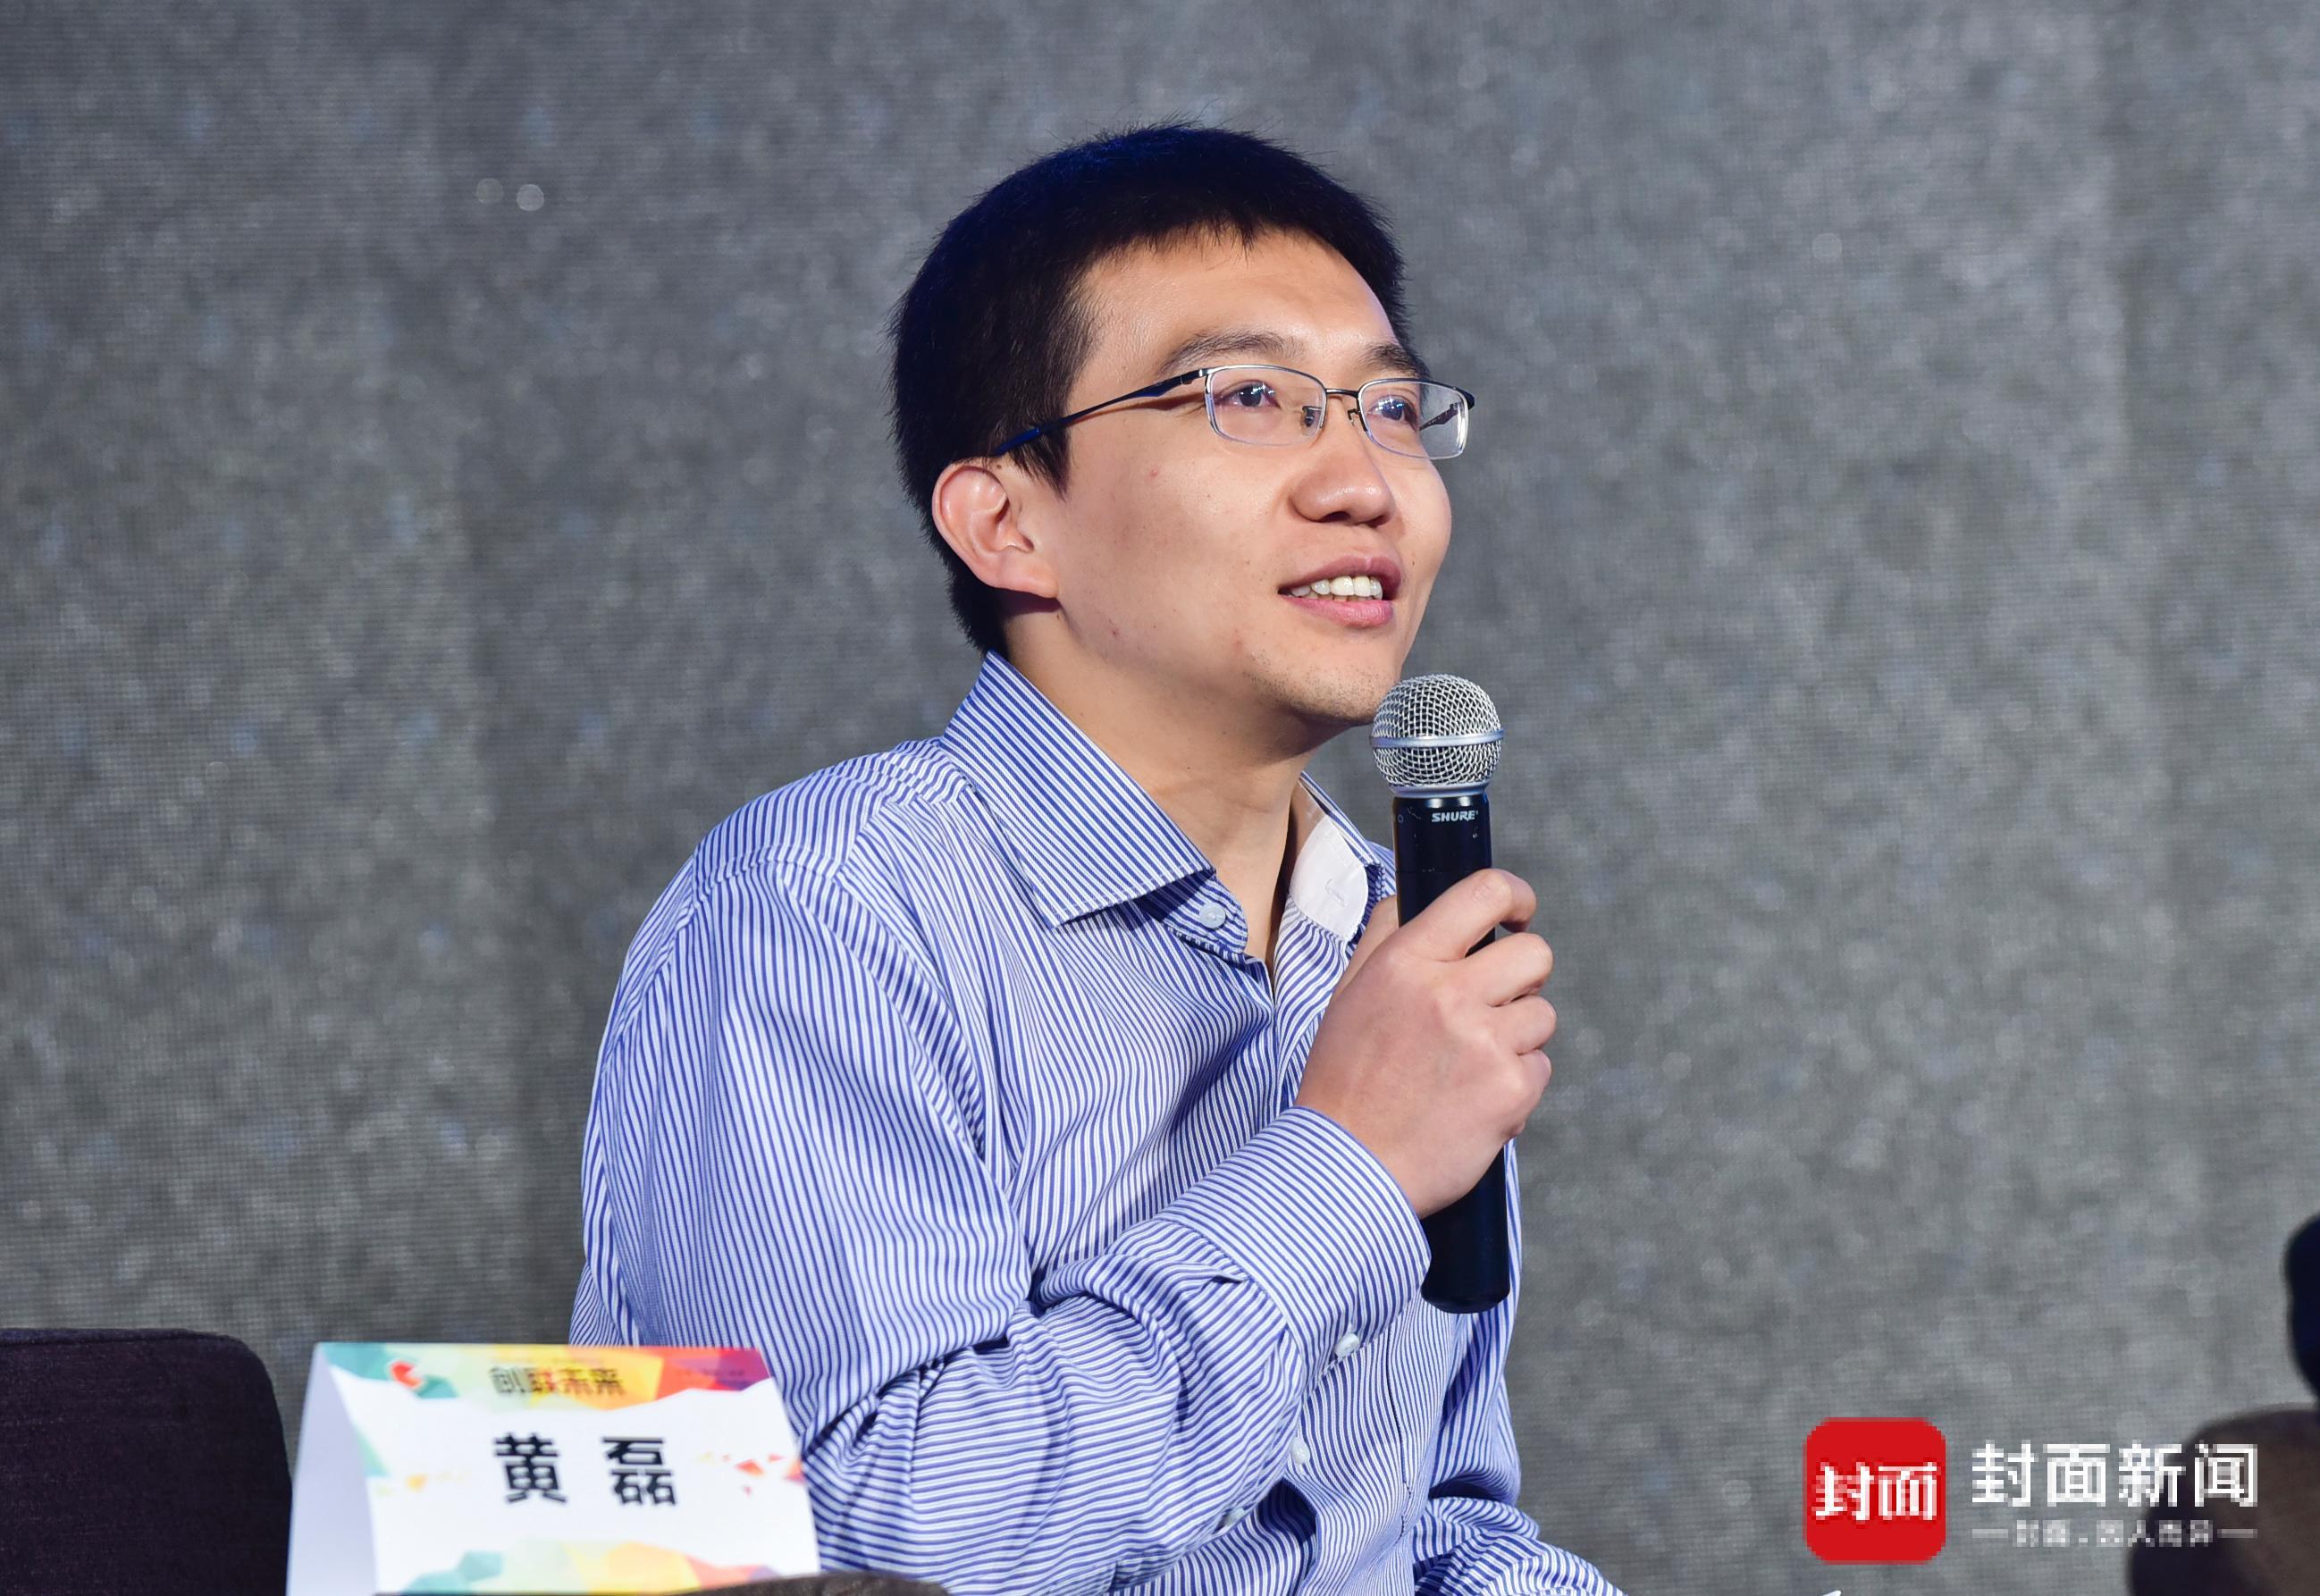 第一财经新媒体科技公司总经理,阿里巴巴媒体运营部资深总监黄磊